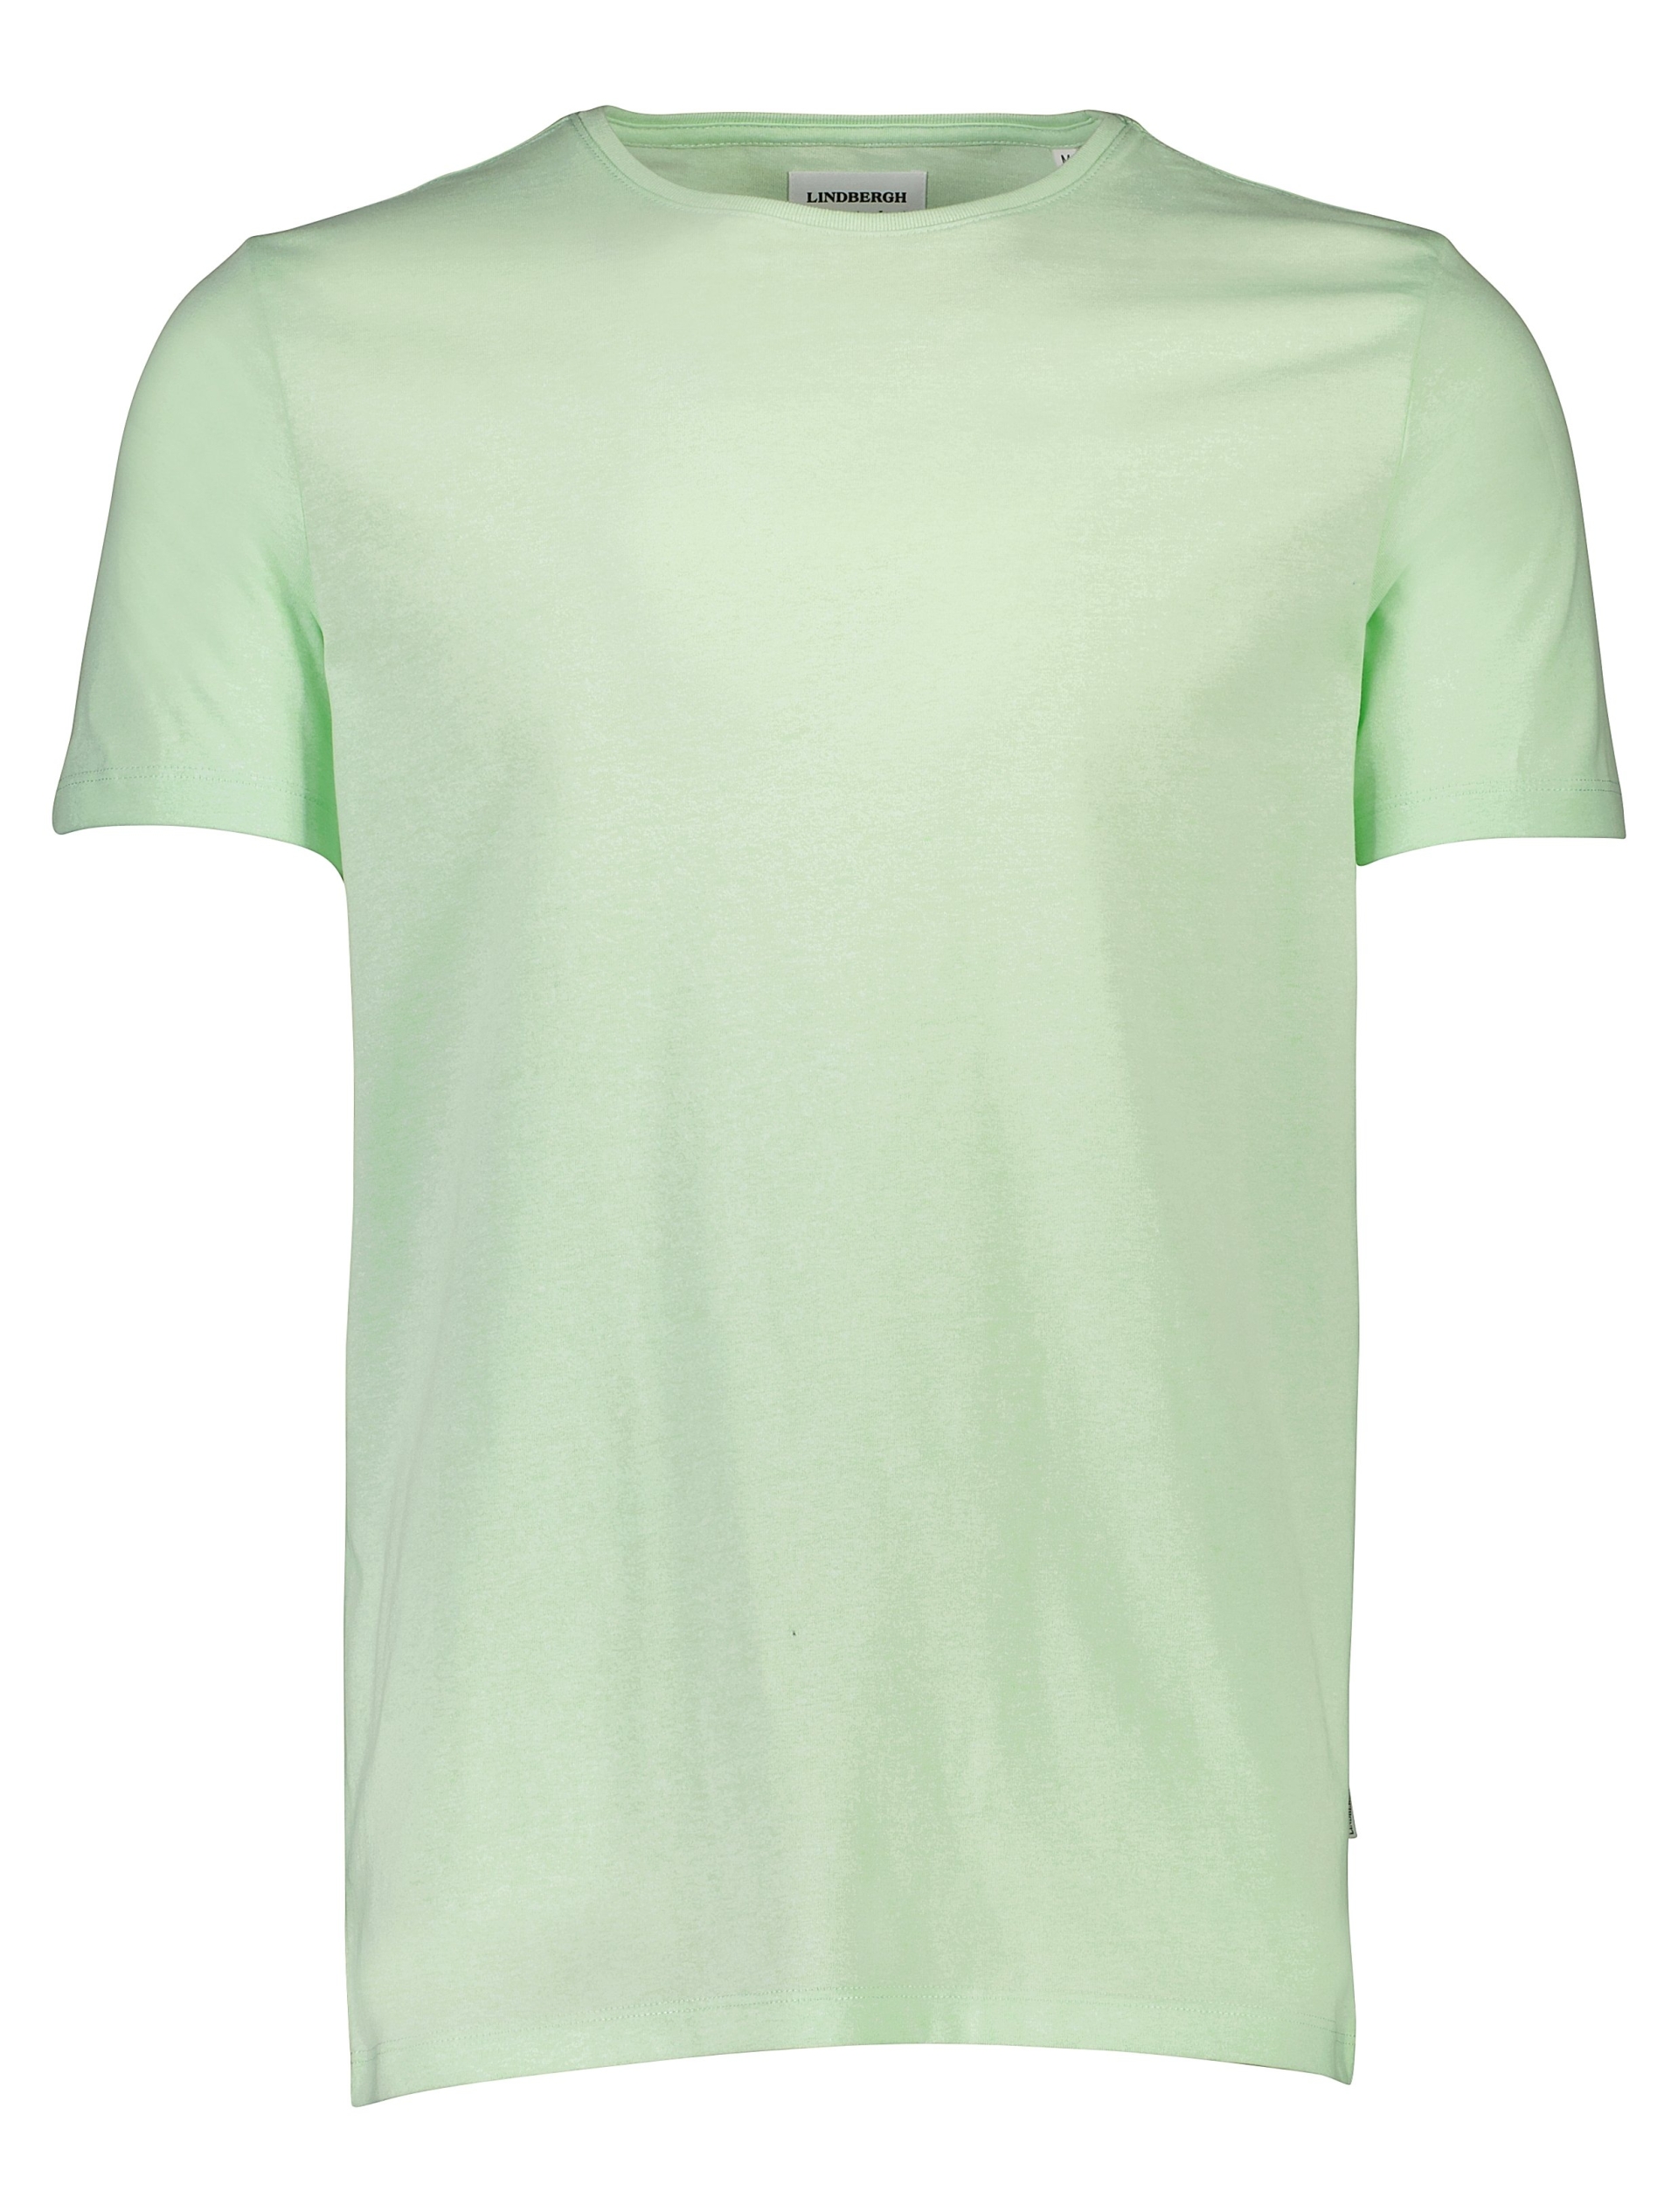 Lindbergh T-shirt grün / mint mix 224